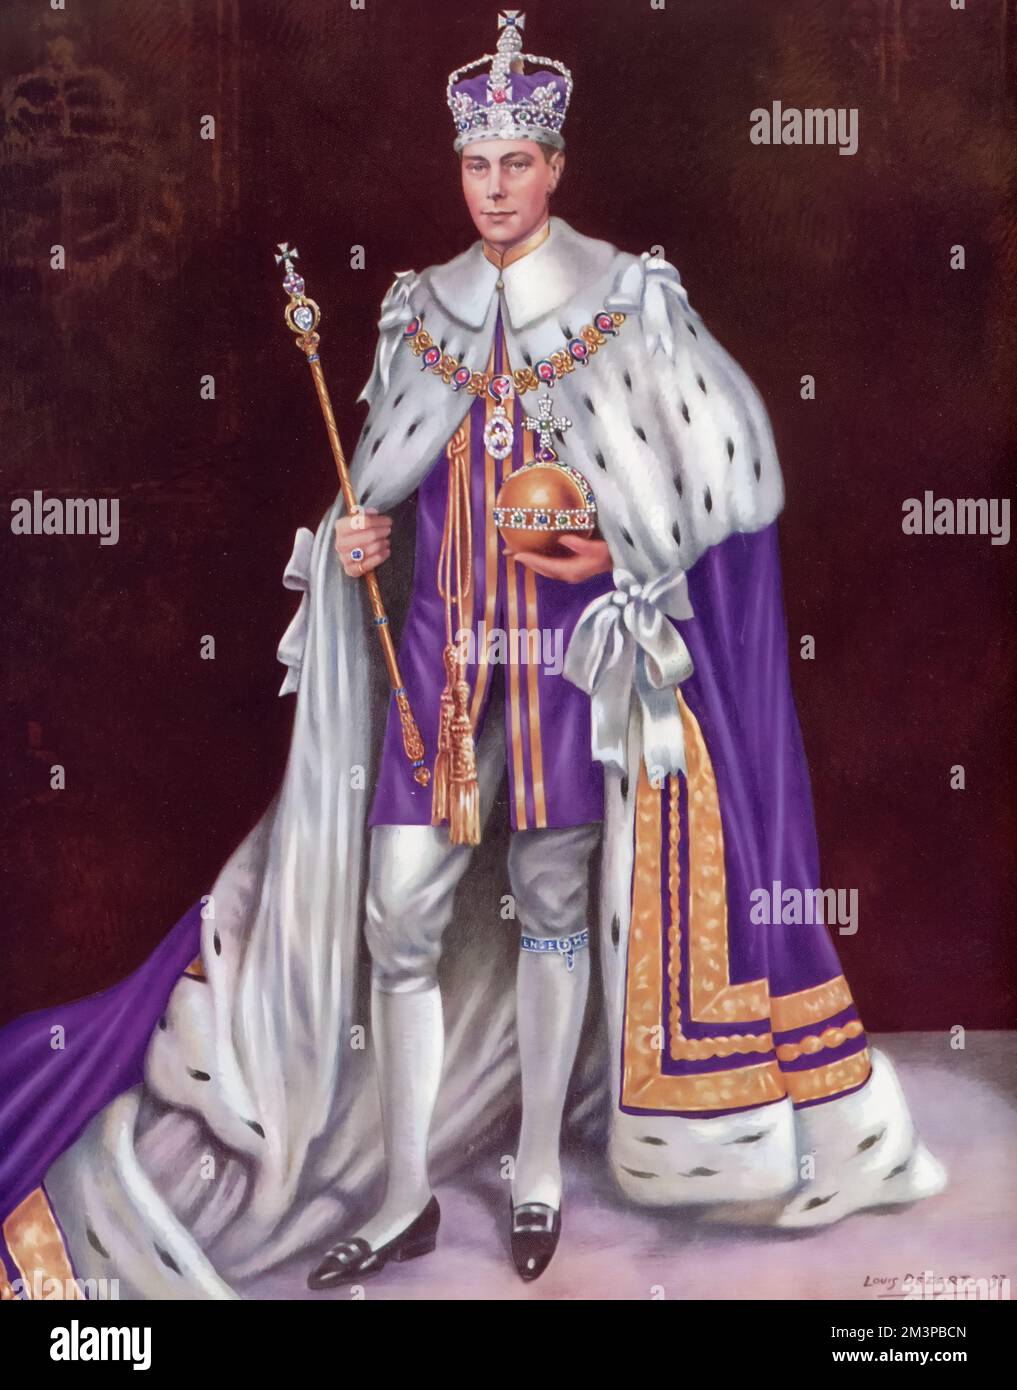 Seine Majestät König George VI. (1895-1952) trug Kronenbademäntel und hielt 1937 die Kronenregalie. Von Louis Dezart. Die Krönung von George VI. Fand am 12. Mai 1937 in der Westminster Abbey statt, dem Datum, das zuvor für die Krönung seines Bruders Edward VIII vorgesehen war. Stockfoto